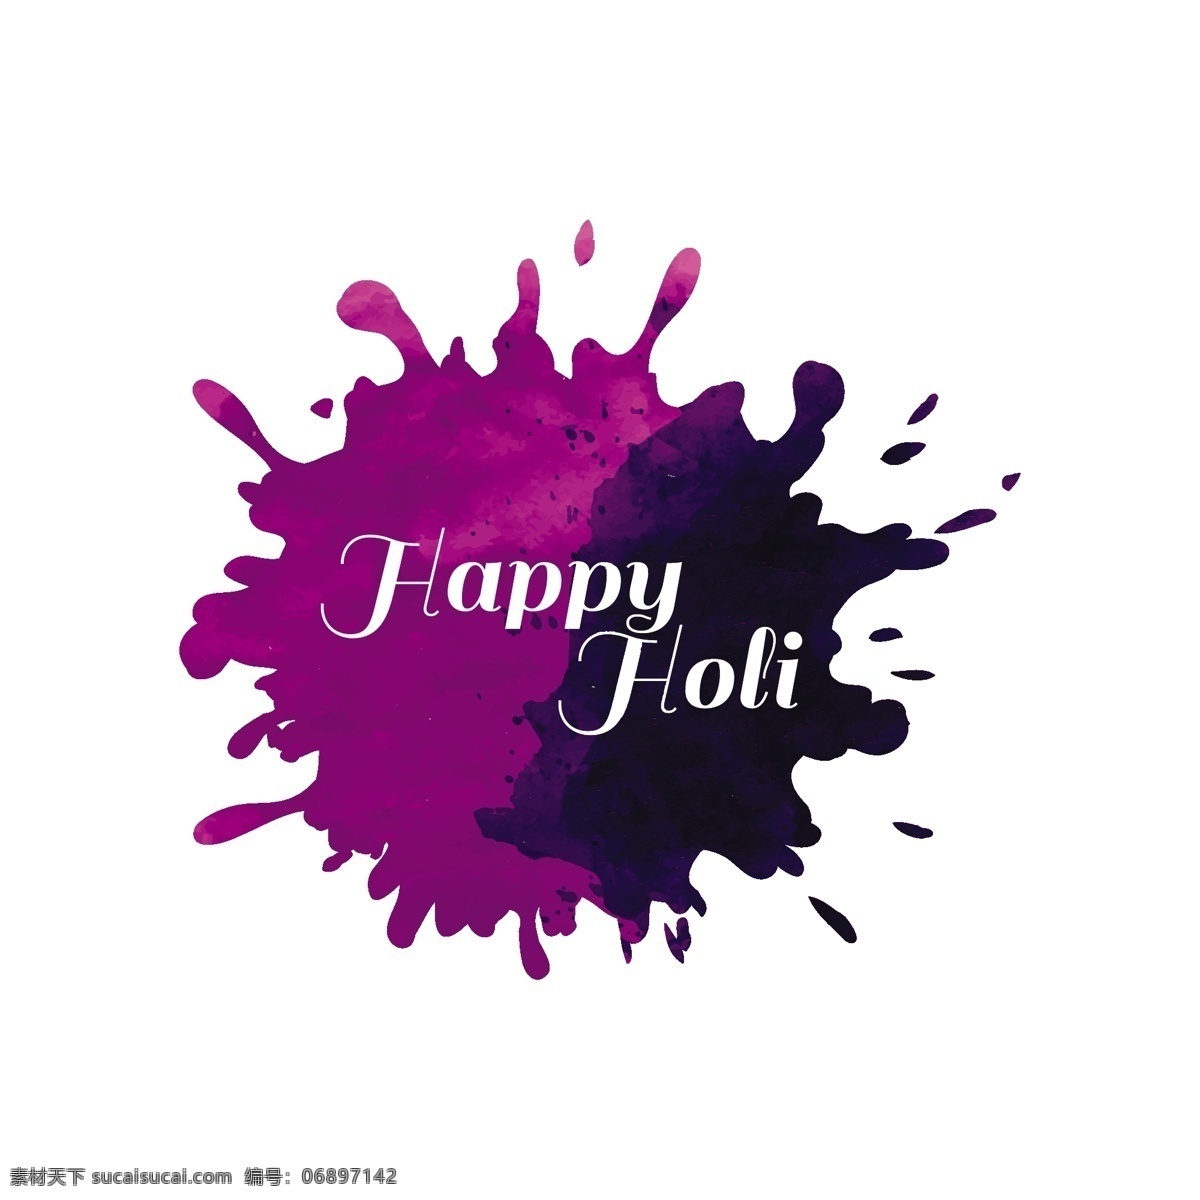 紫色 水彩 染色 胡里 节 水彩画 爱 油漆 弹簧 艺术 色彩 庆祝 快乐 多姿多彩 印度 墨 宗教色彩 乐趣 胡里节 文化 传统 颜色